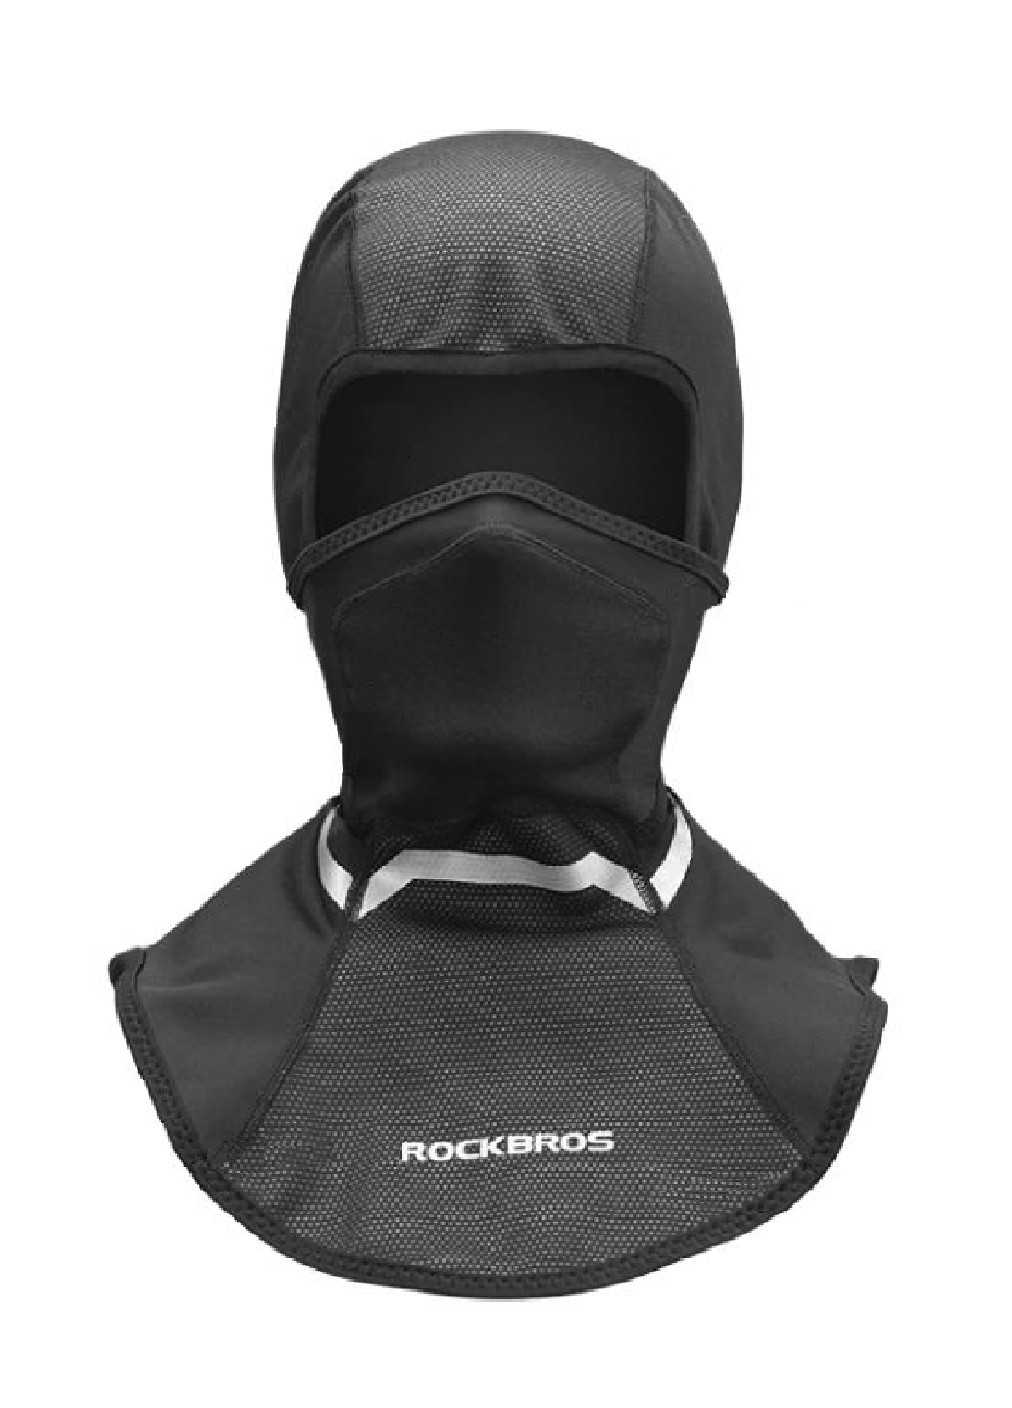 Francesco Marconi термо маска флисовая балаклава зимний бафф шарф подшлемник лыжная шапка (472824-prob) черная логотип черный кэжуал флис производство - Китай